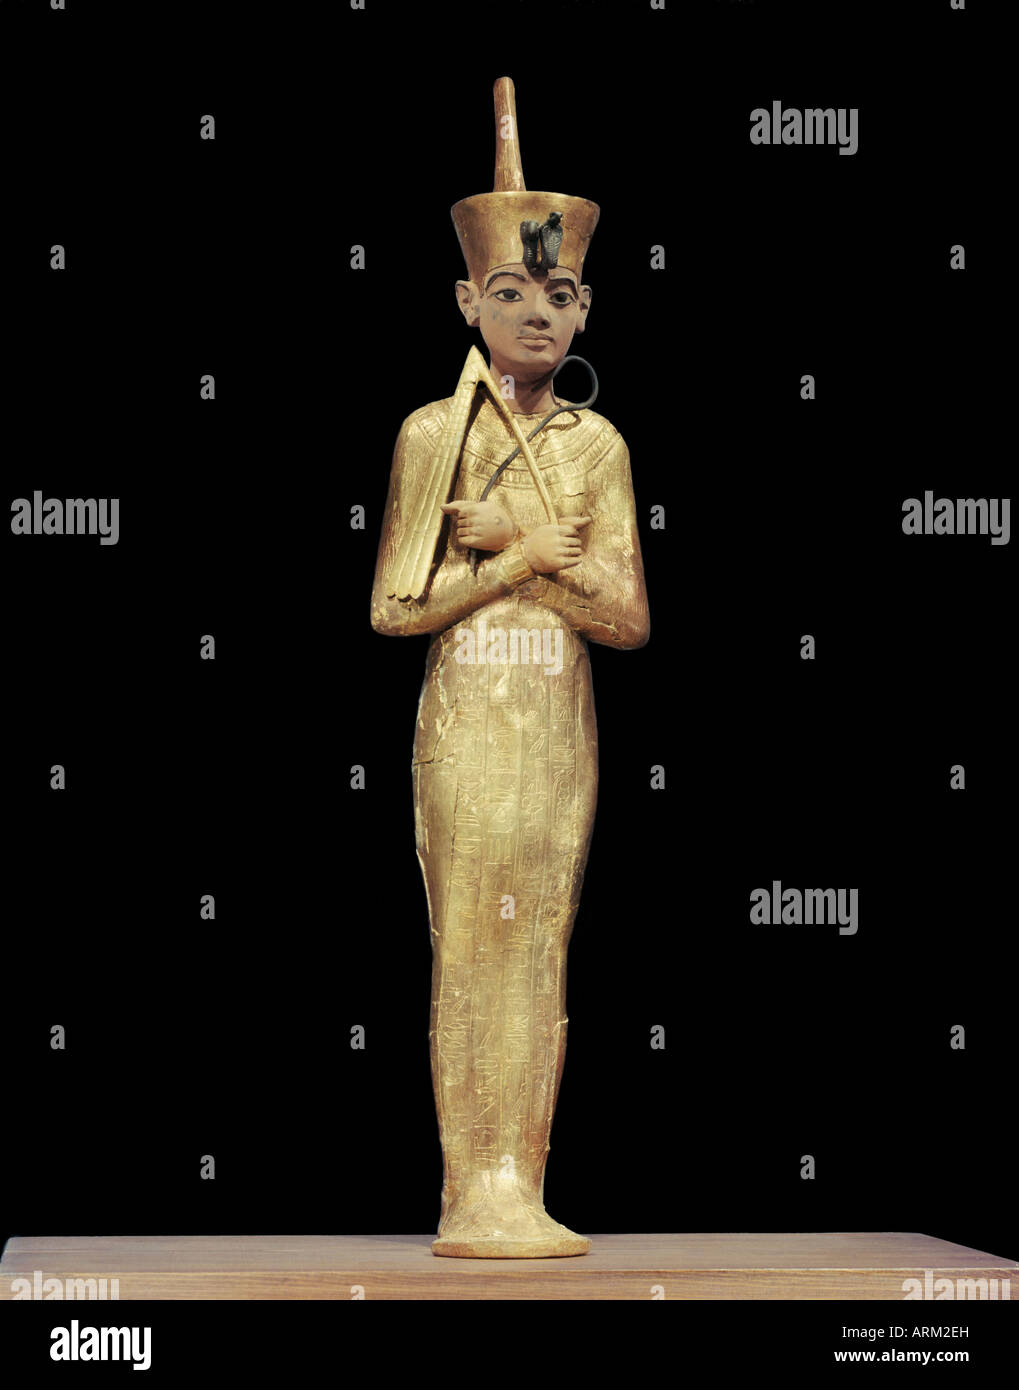 Ushabti de Tutankhamon, showning Rey vistiendo la corona roja del Norte, de la tumba del faraón Tutankhamon Foto de stock